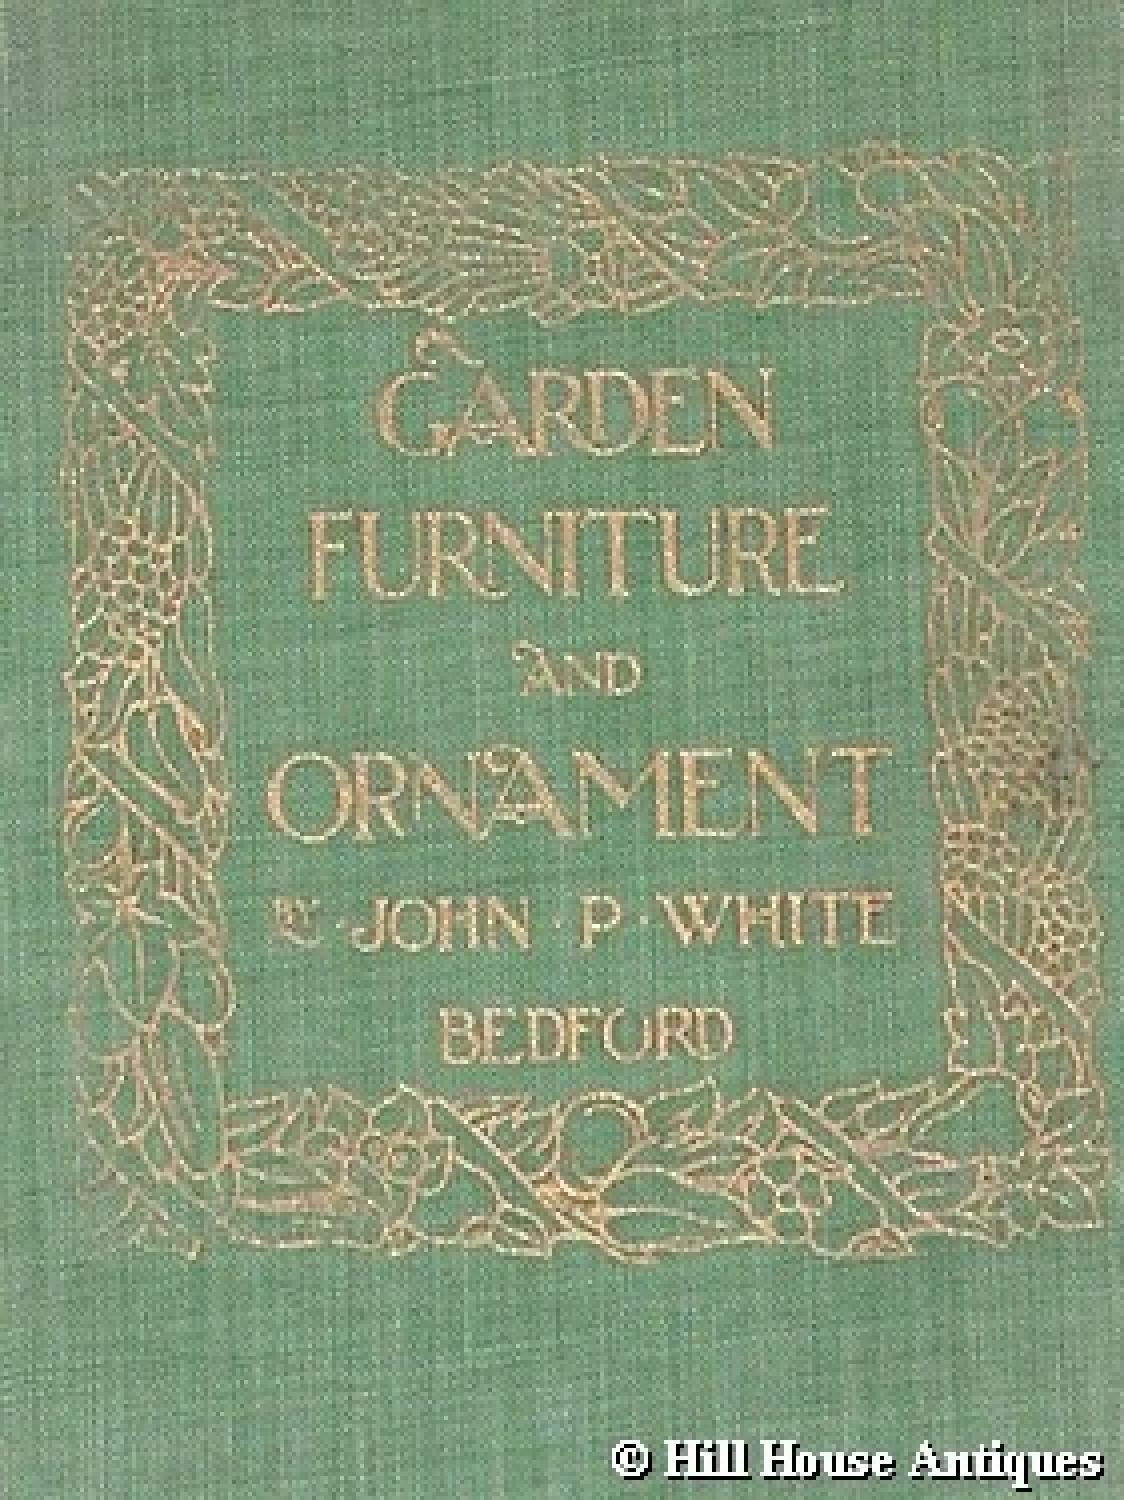 Rare John P White garden catalogue